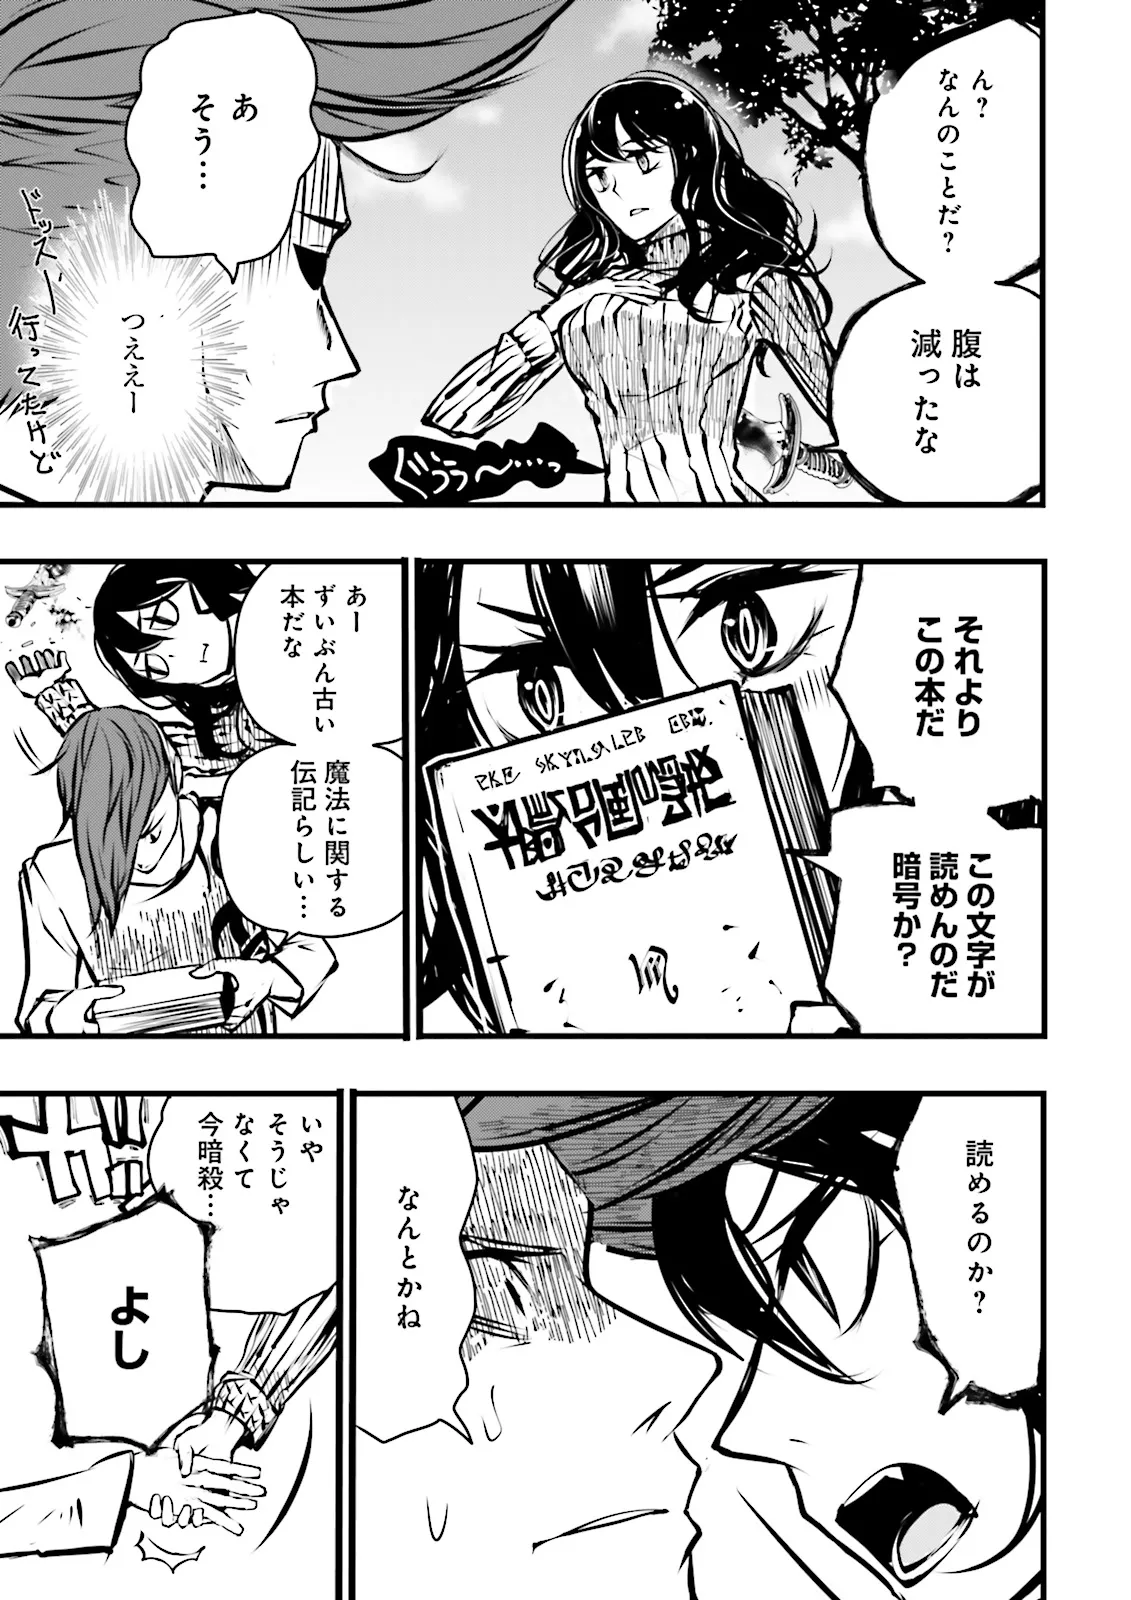 Sukiru Ga Nakereba Level wo Ageru ~ 99 Ga Kansuto No Sekai De Reberu 800 Man Kara Sutato ~ - Chapter 37.4 - Page 9